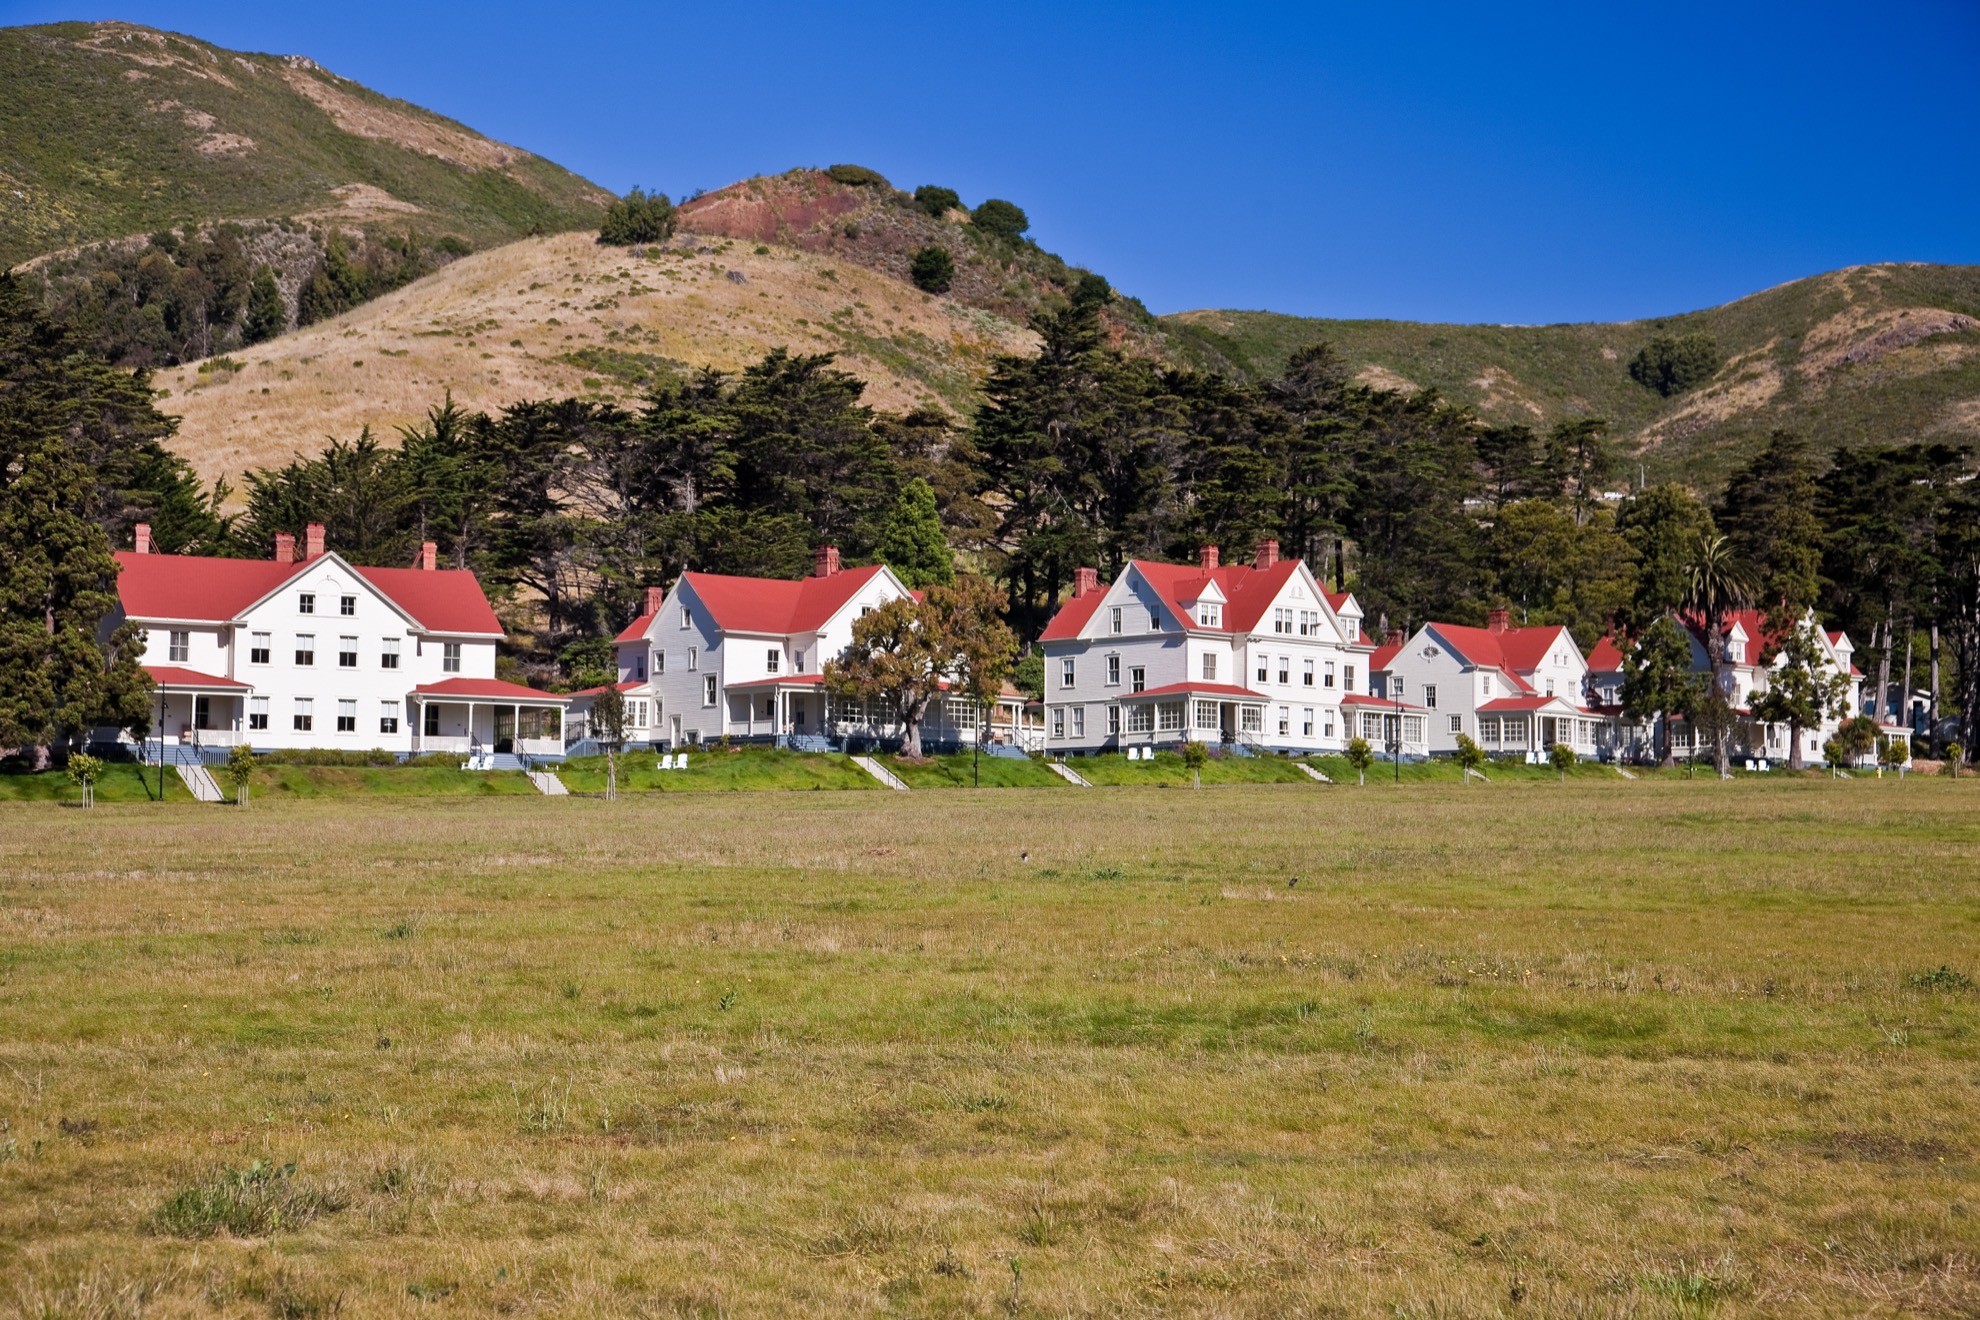 Visitando el Marin Headlands de Marin de San Francisco: 9 cosas que saber - 127